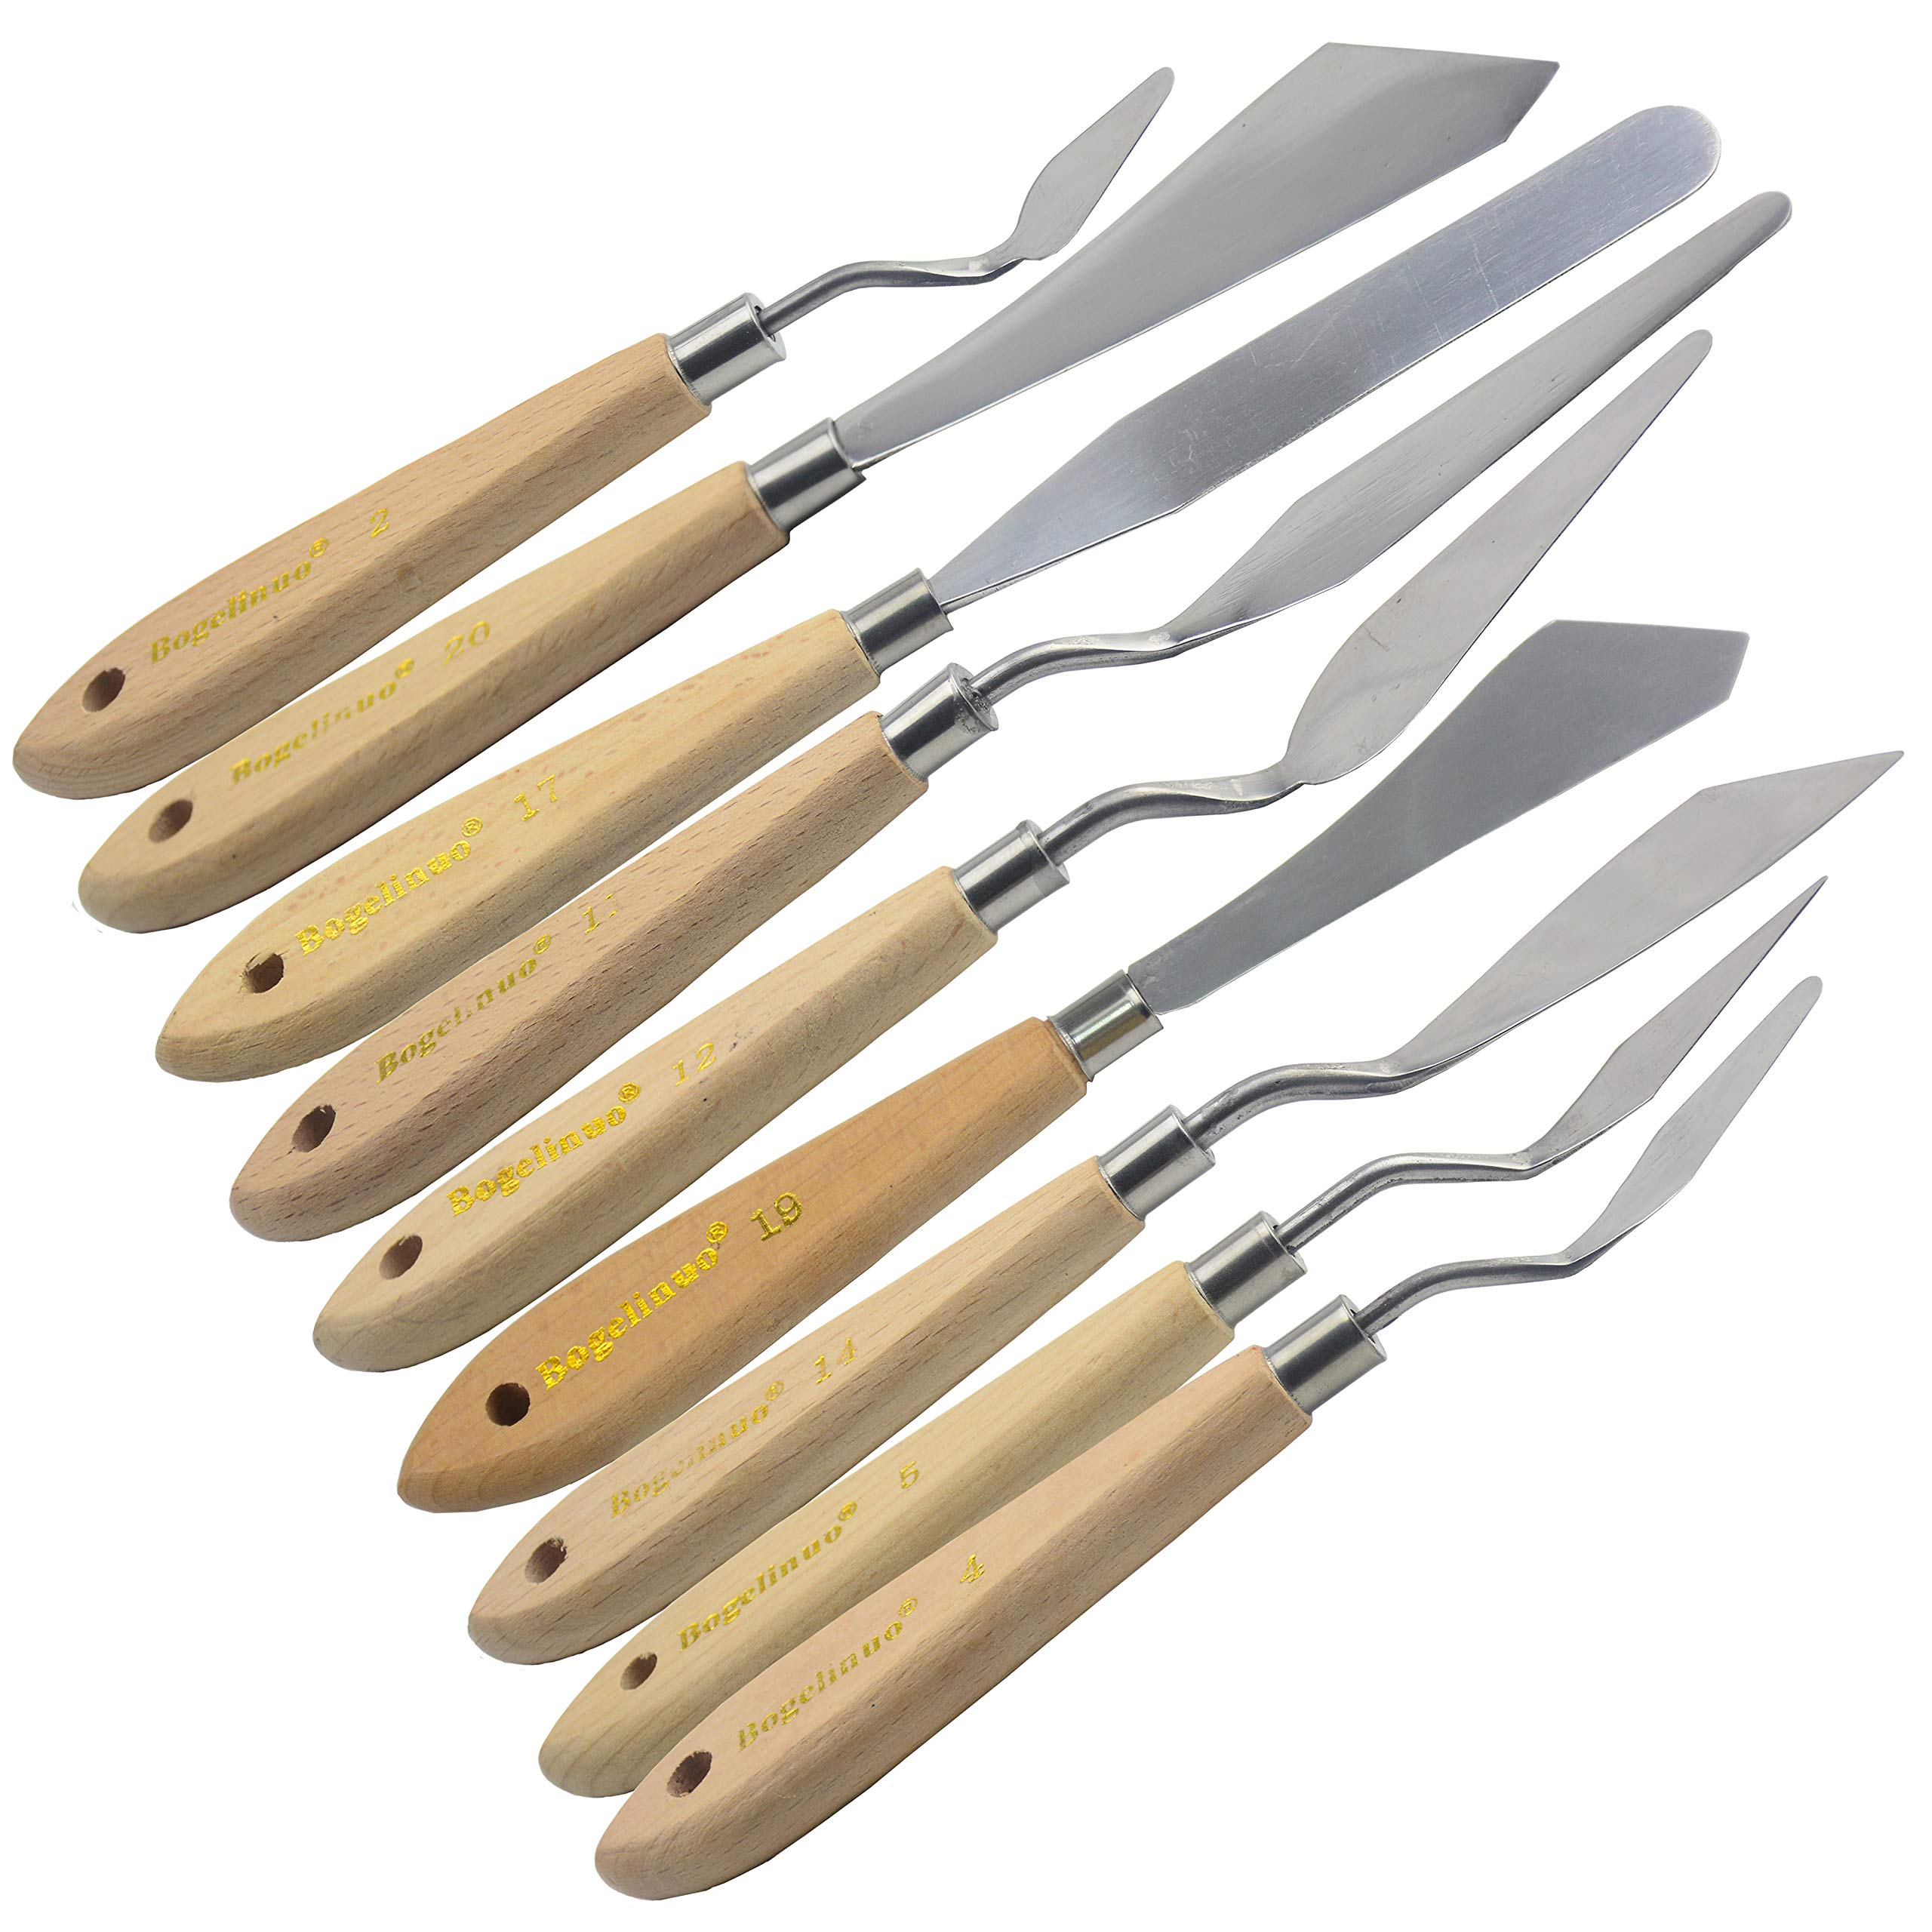 AebDerp 9 pcs Palette Knives Oil Painting Scraper Shovel Paint